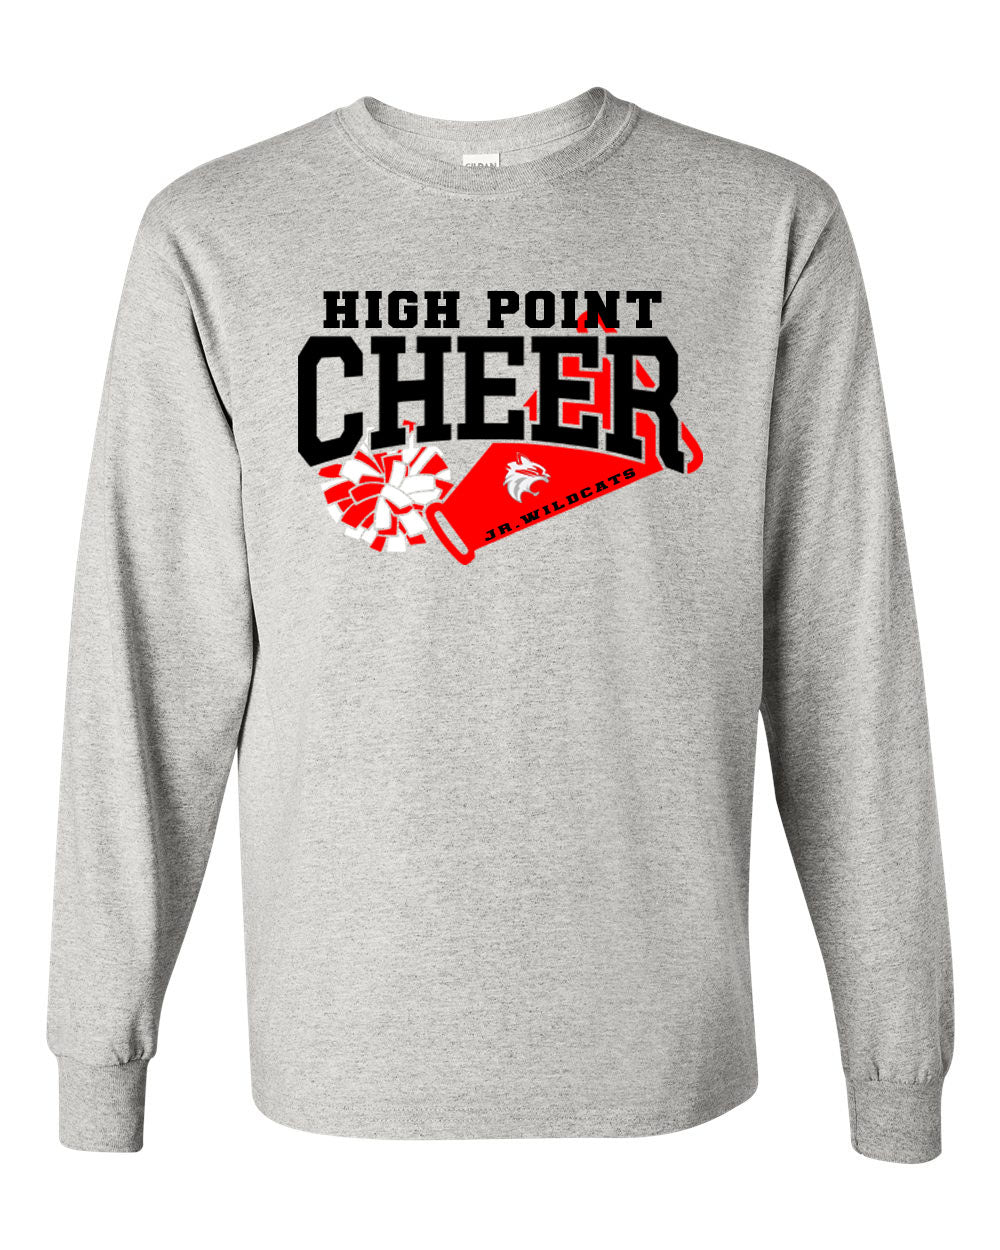 High Point Cheer Design 1 Long Sleeve Shirt